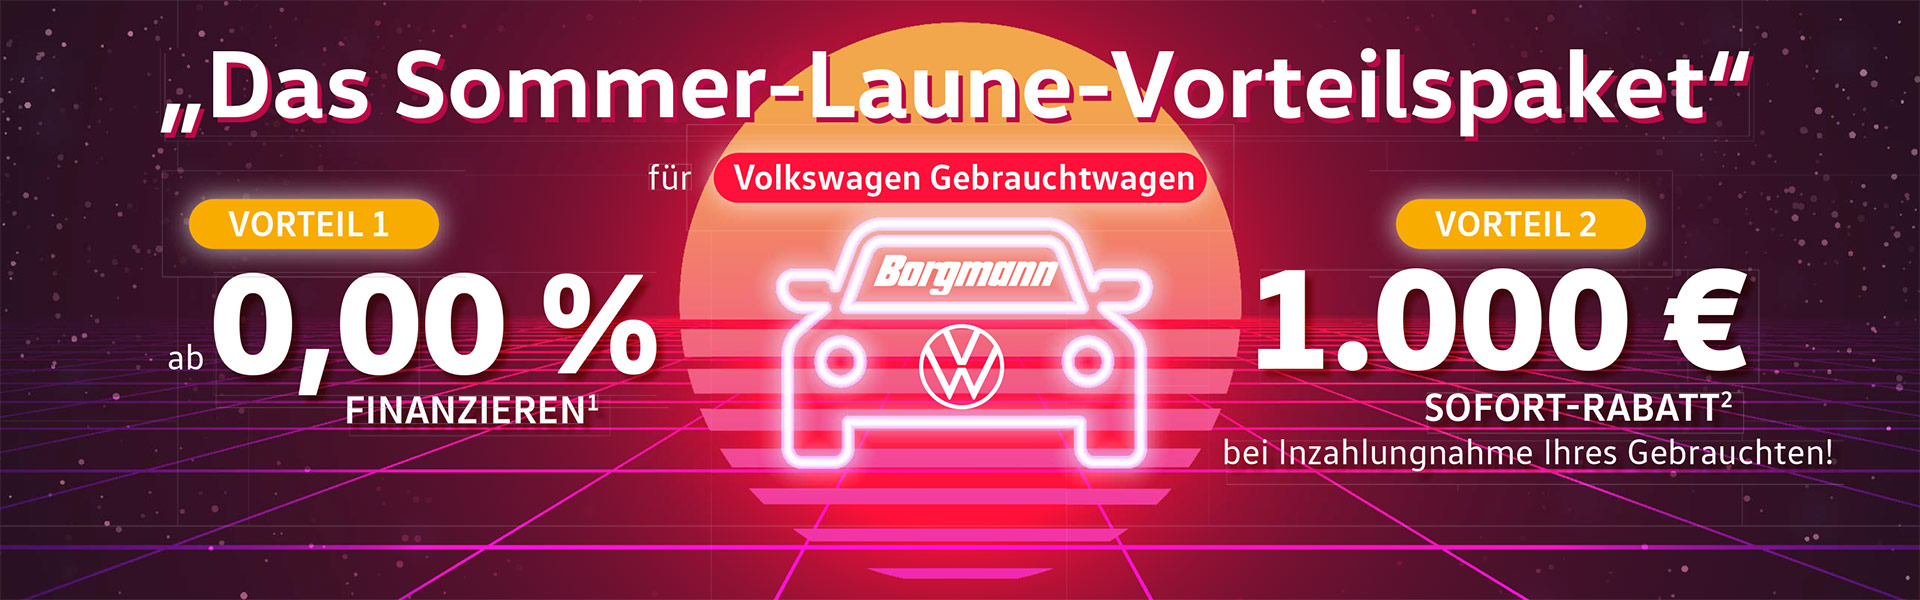 0% Finanzierung und Inzahlungnahmebonus bei VW Borgmann